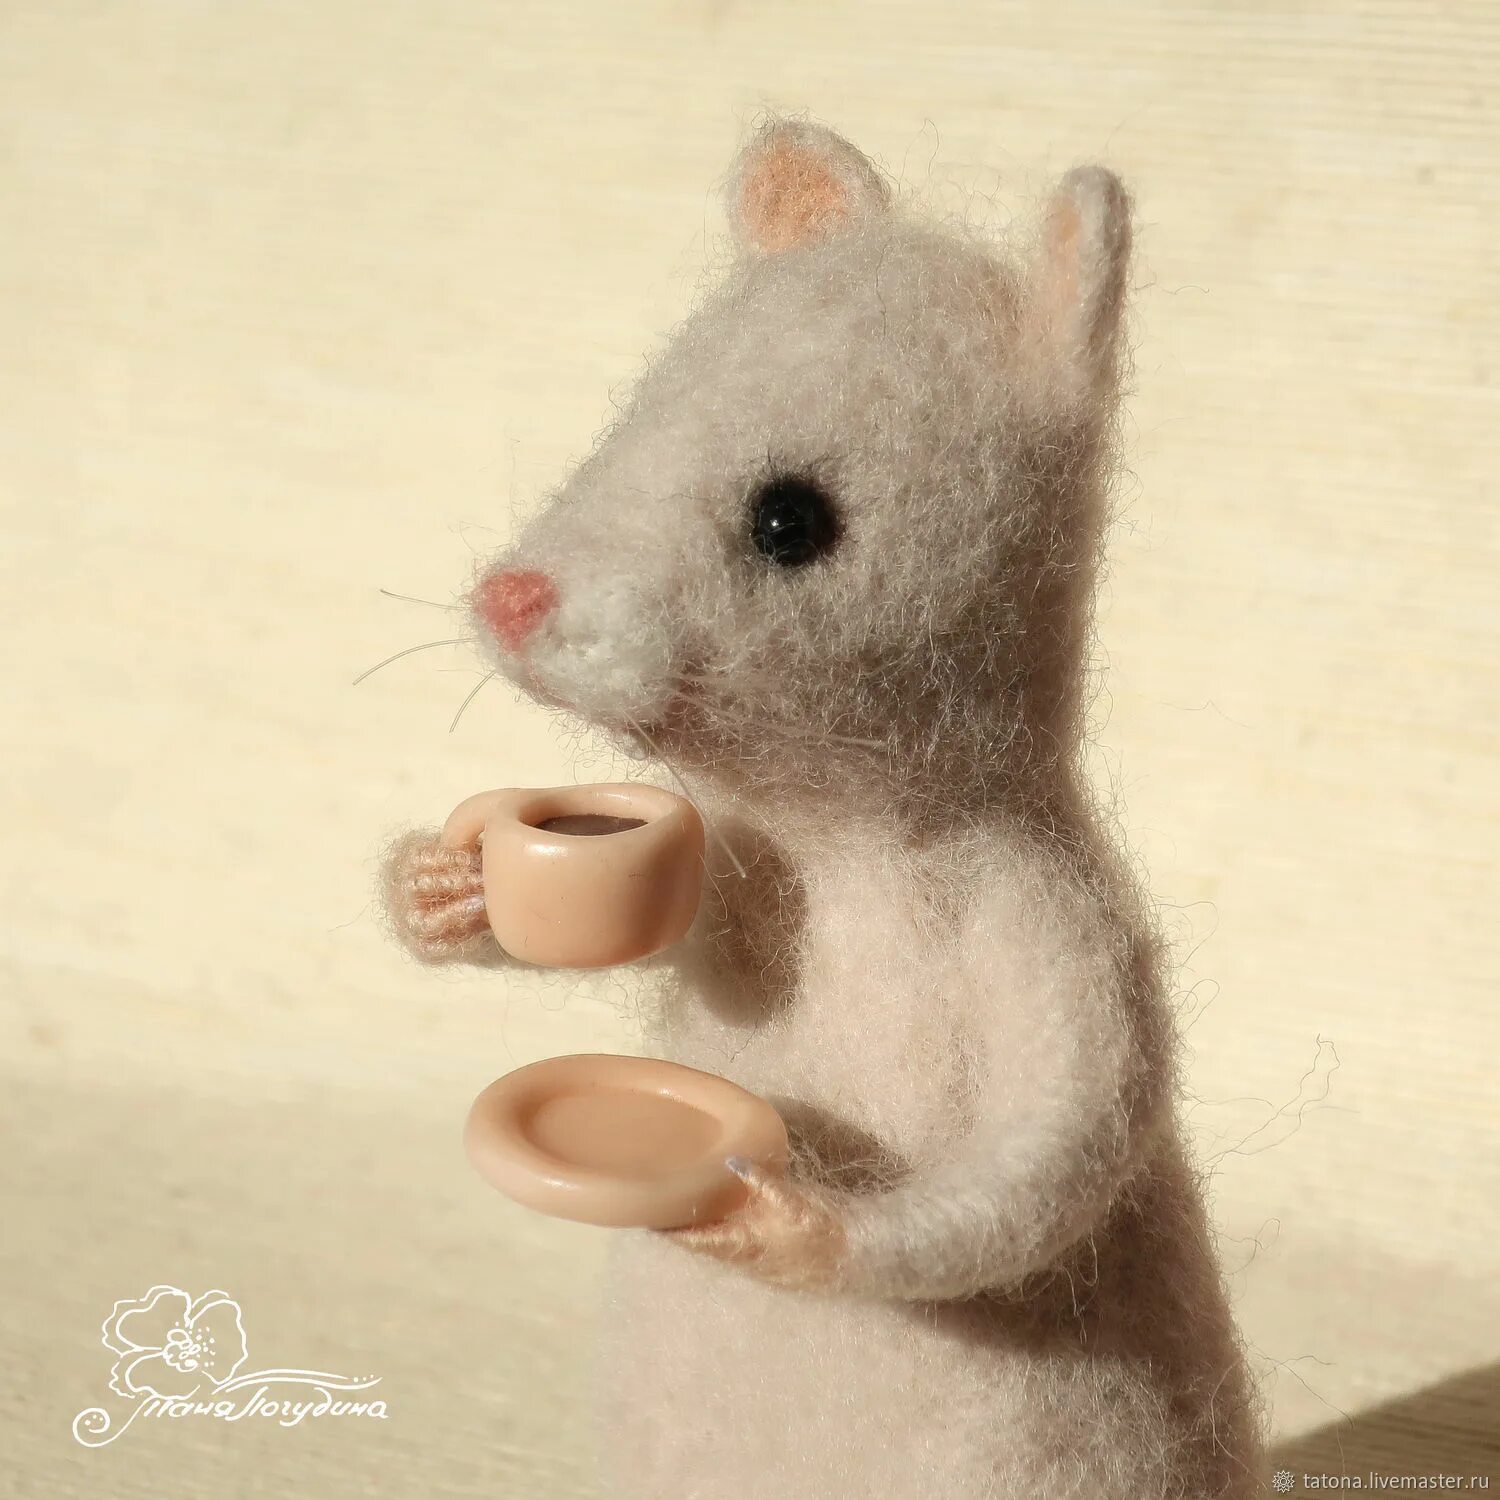 Время мышах. Джон кофе и мышонок. Мышка как кофе. Одна милая мышка была боец найти по фото.